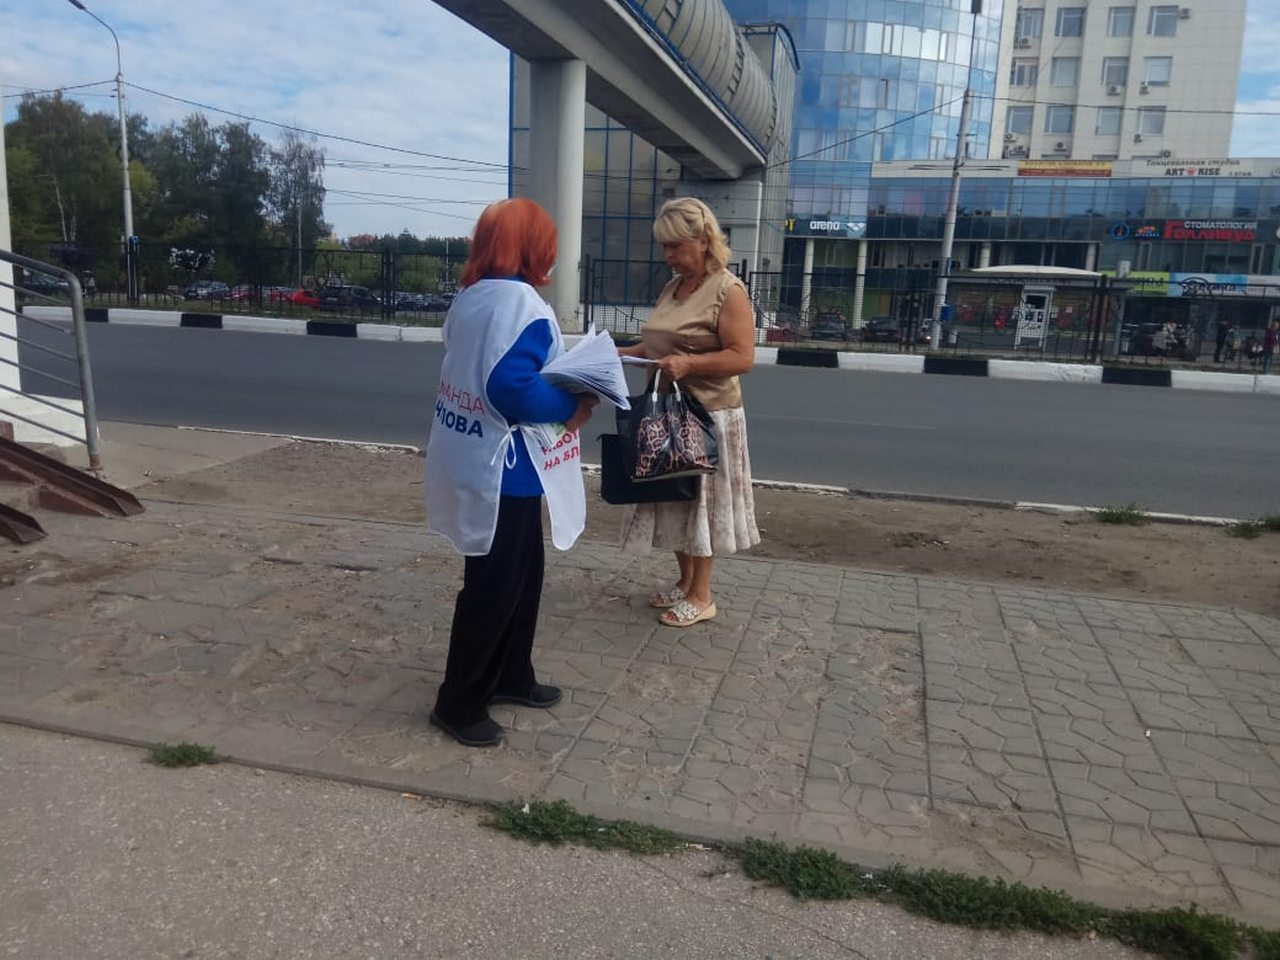 В Московском районе продолжаются мероприятия по контролю за проведением публичных мероприятий 27.08.2020